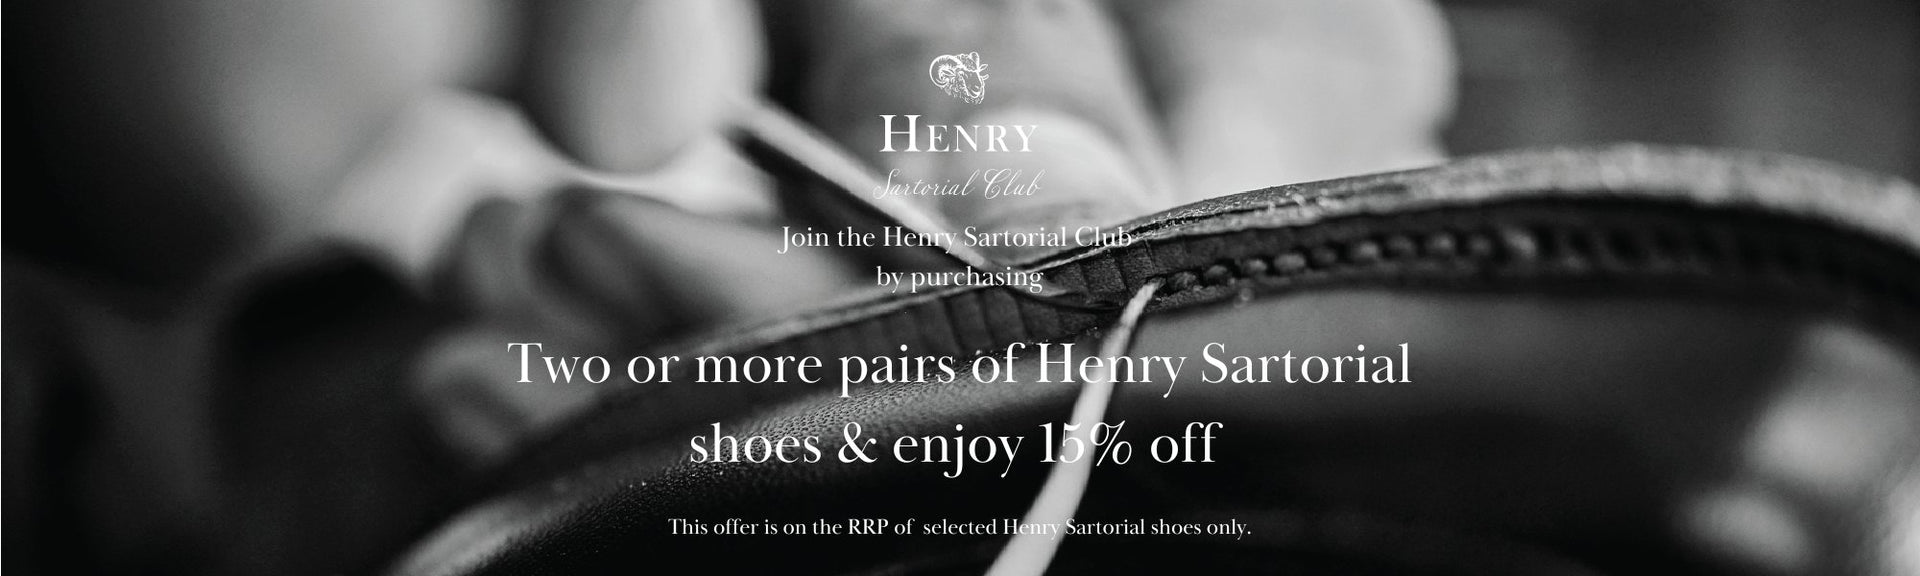 Henry Sartorial Shoe Club